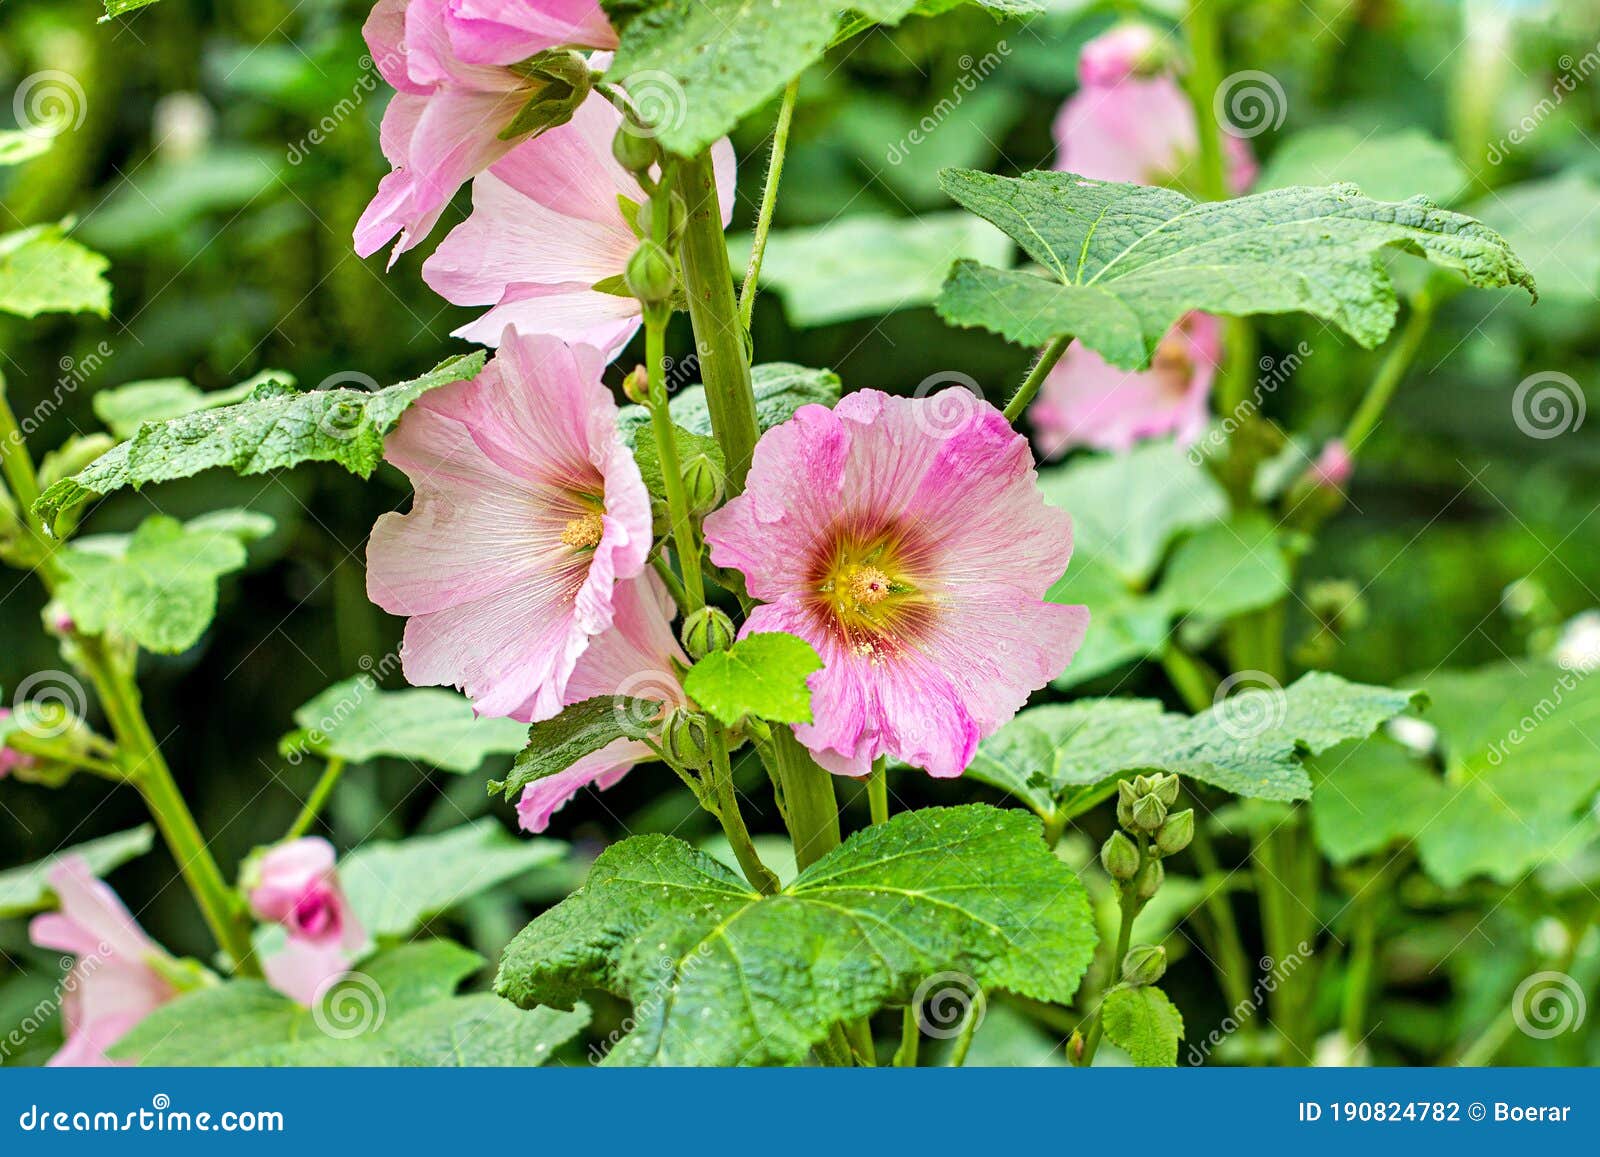 Flores Frescas De Malva Rosa Grande Sobre Fondo De Hojas Verdes En El  Jardín En Verano. Foto de archivo - Imagen de grande, fresco: 190824782